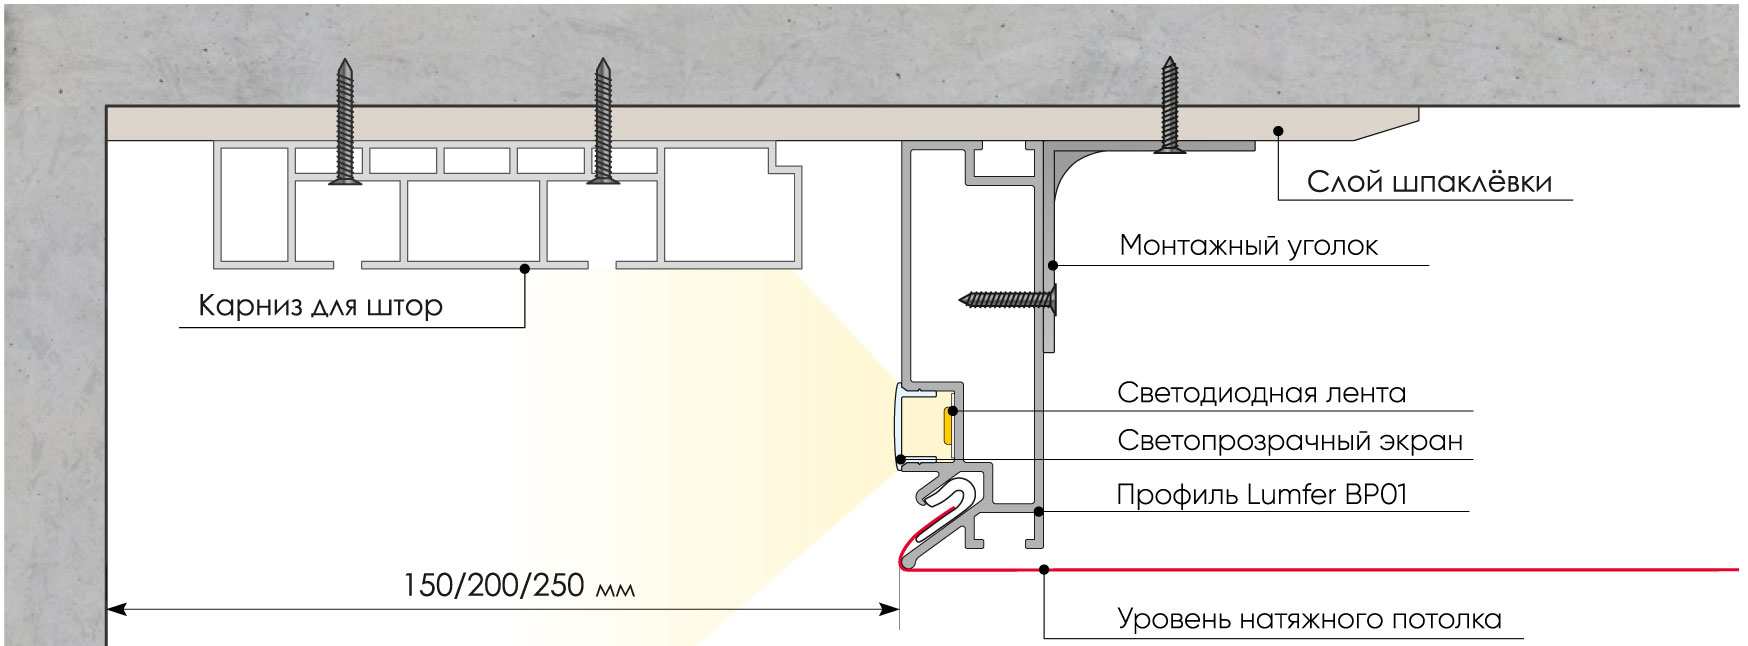 Отличный вариант для современного интерьера: ниша для штор в натяжном потолке